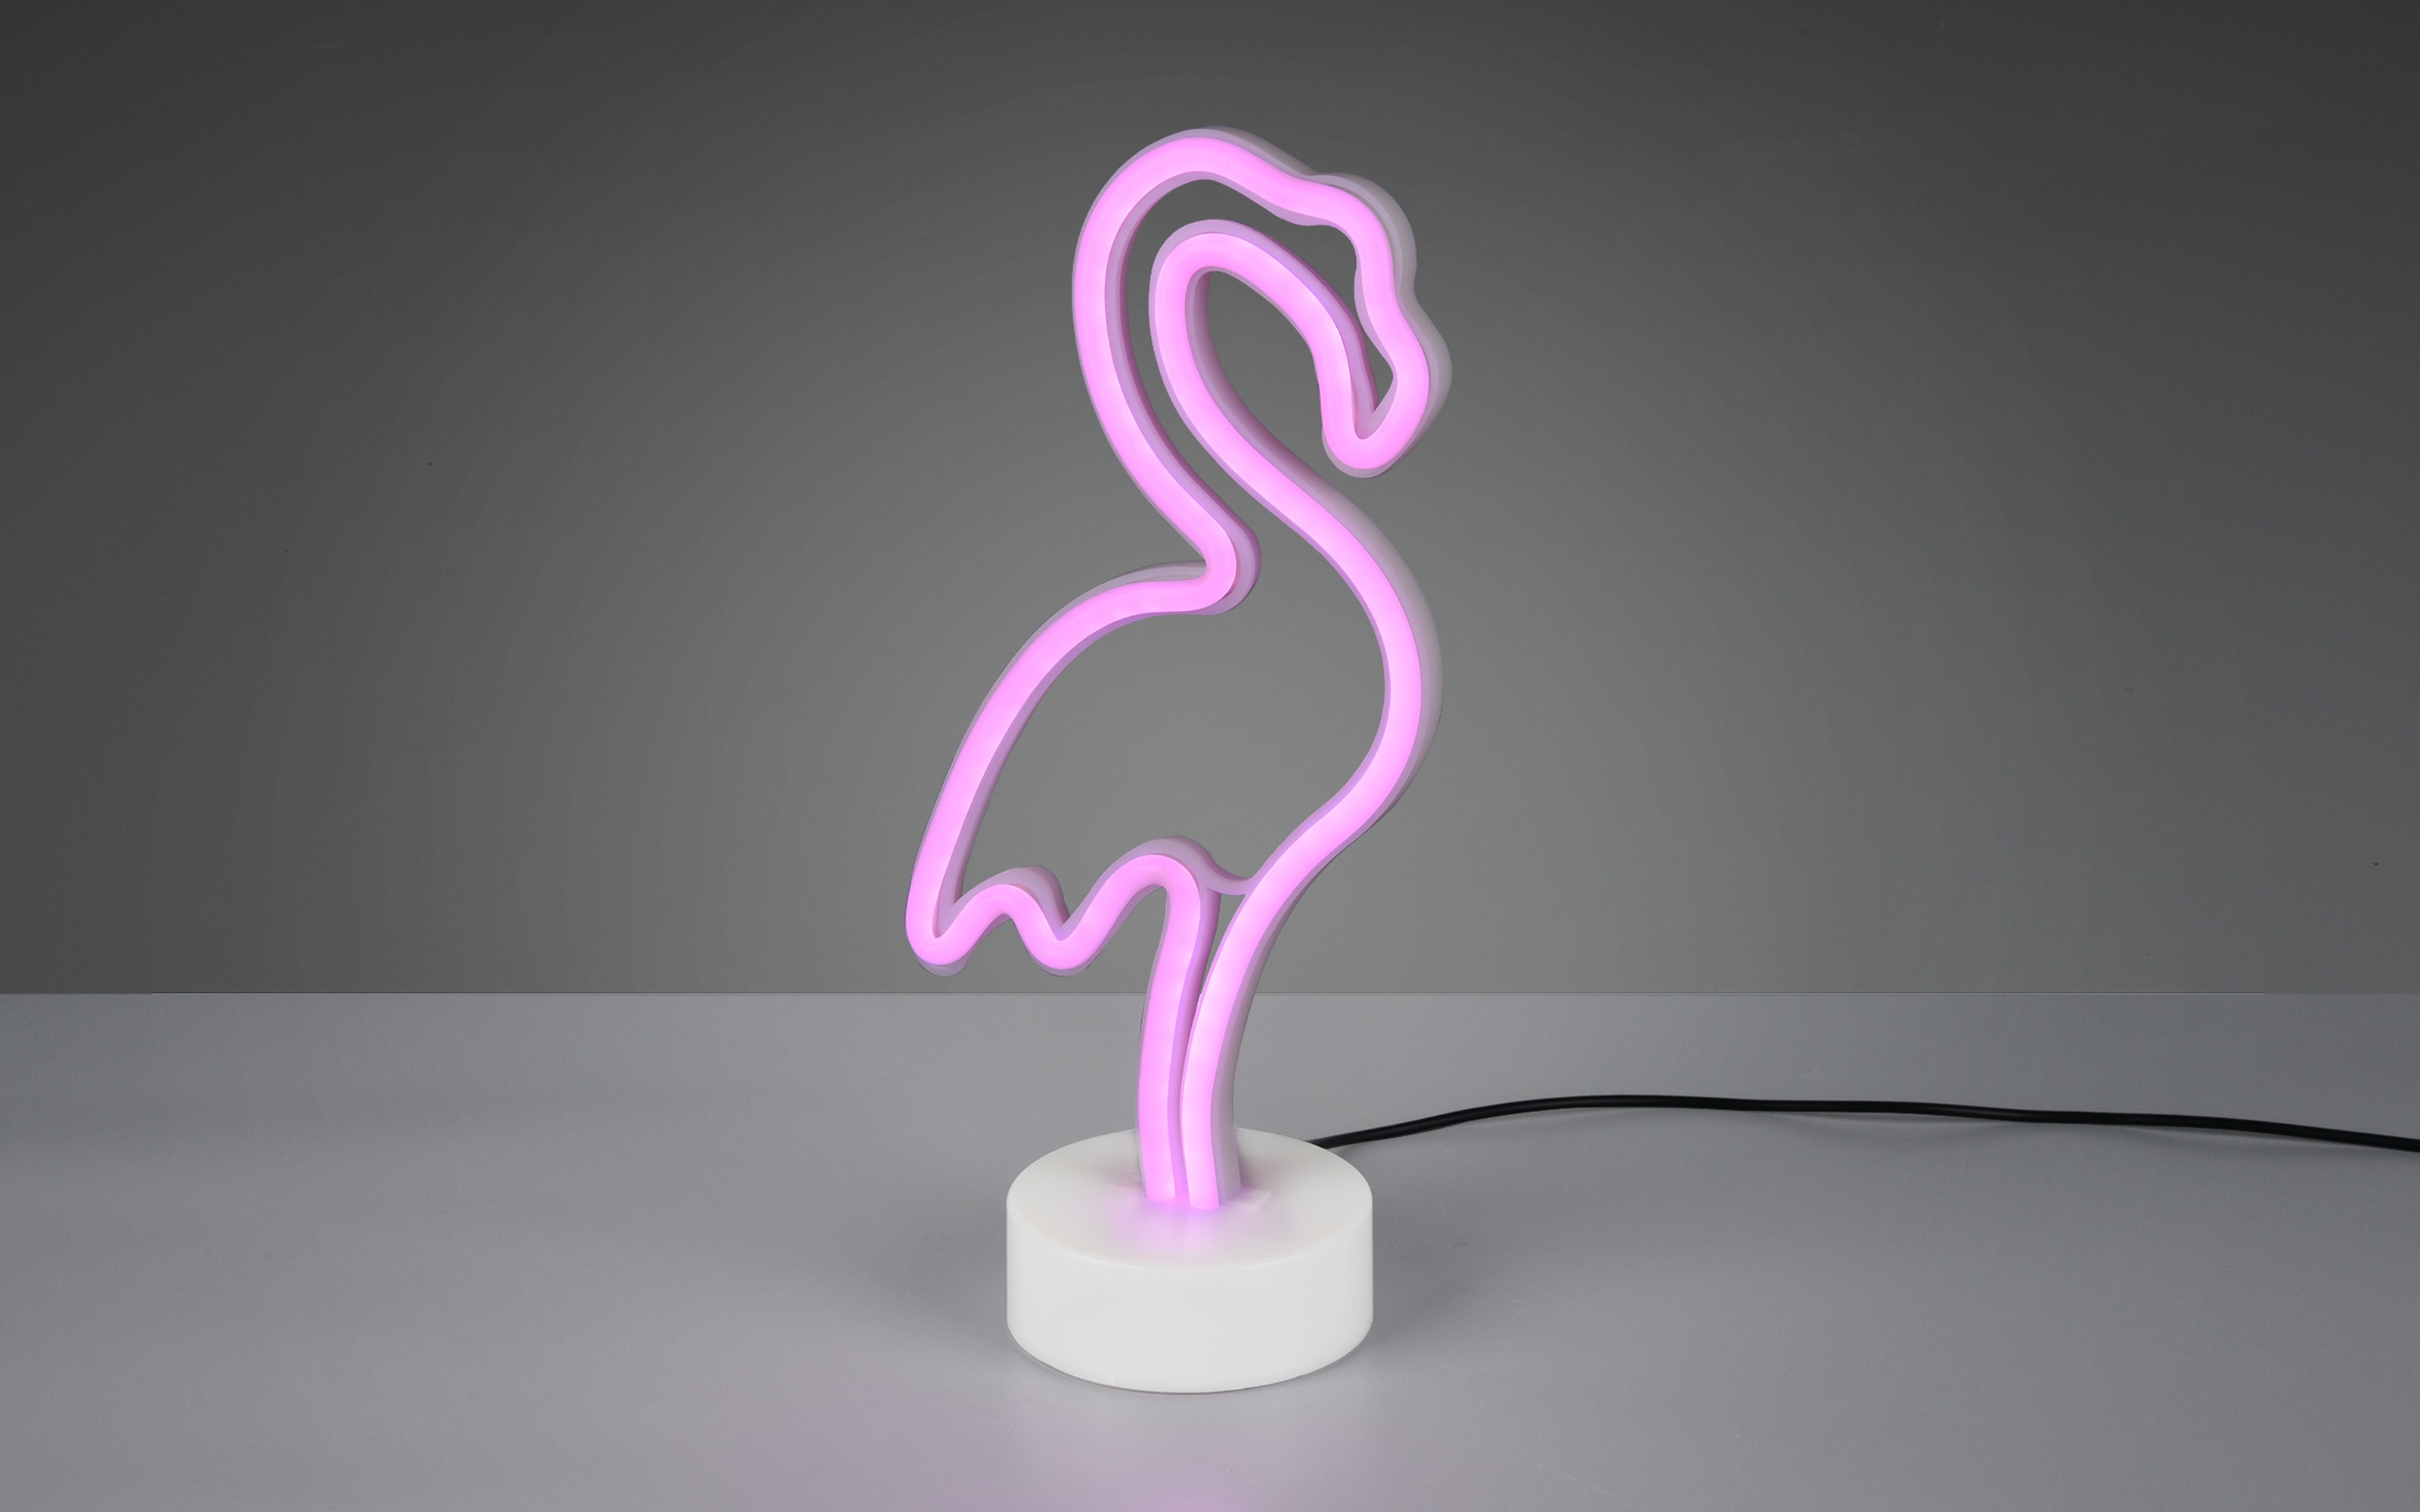 LED-Deko-Tischleuchte Flamingo, weiß, 32,5 cm